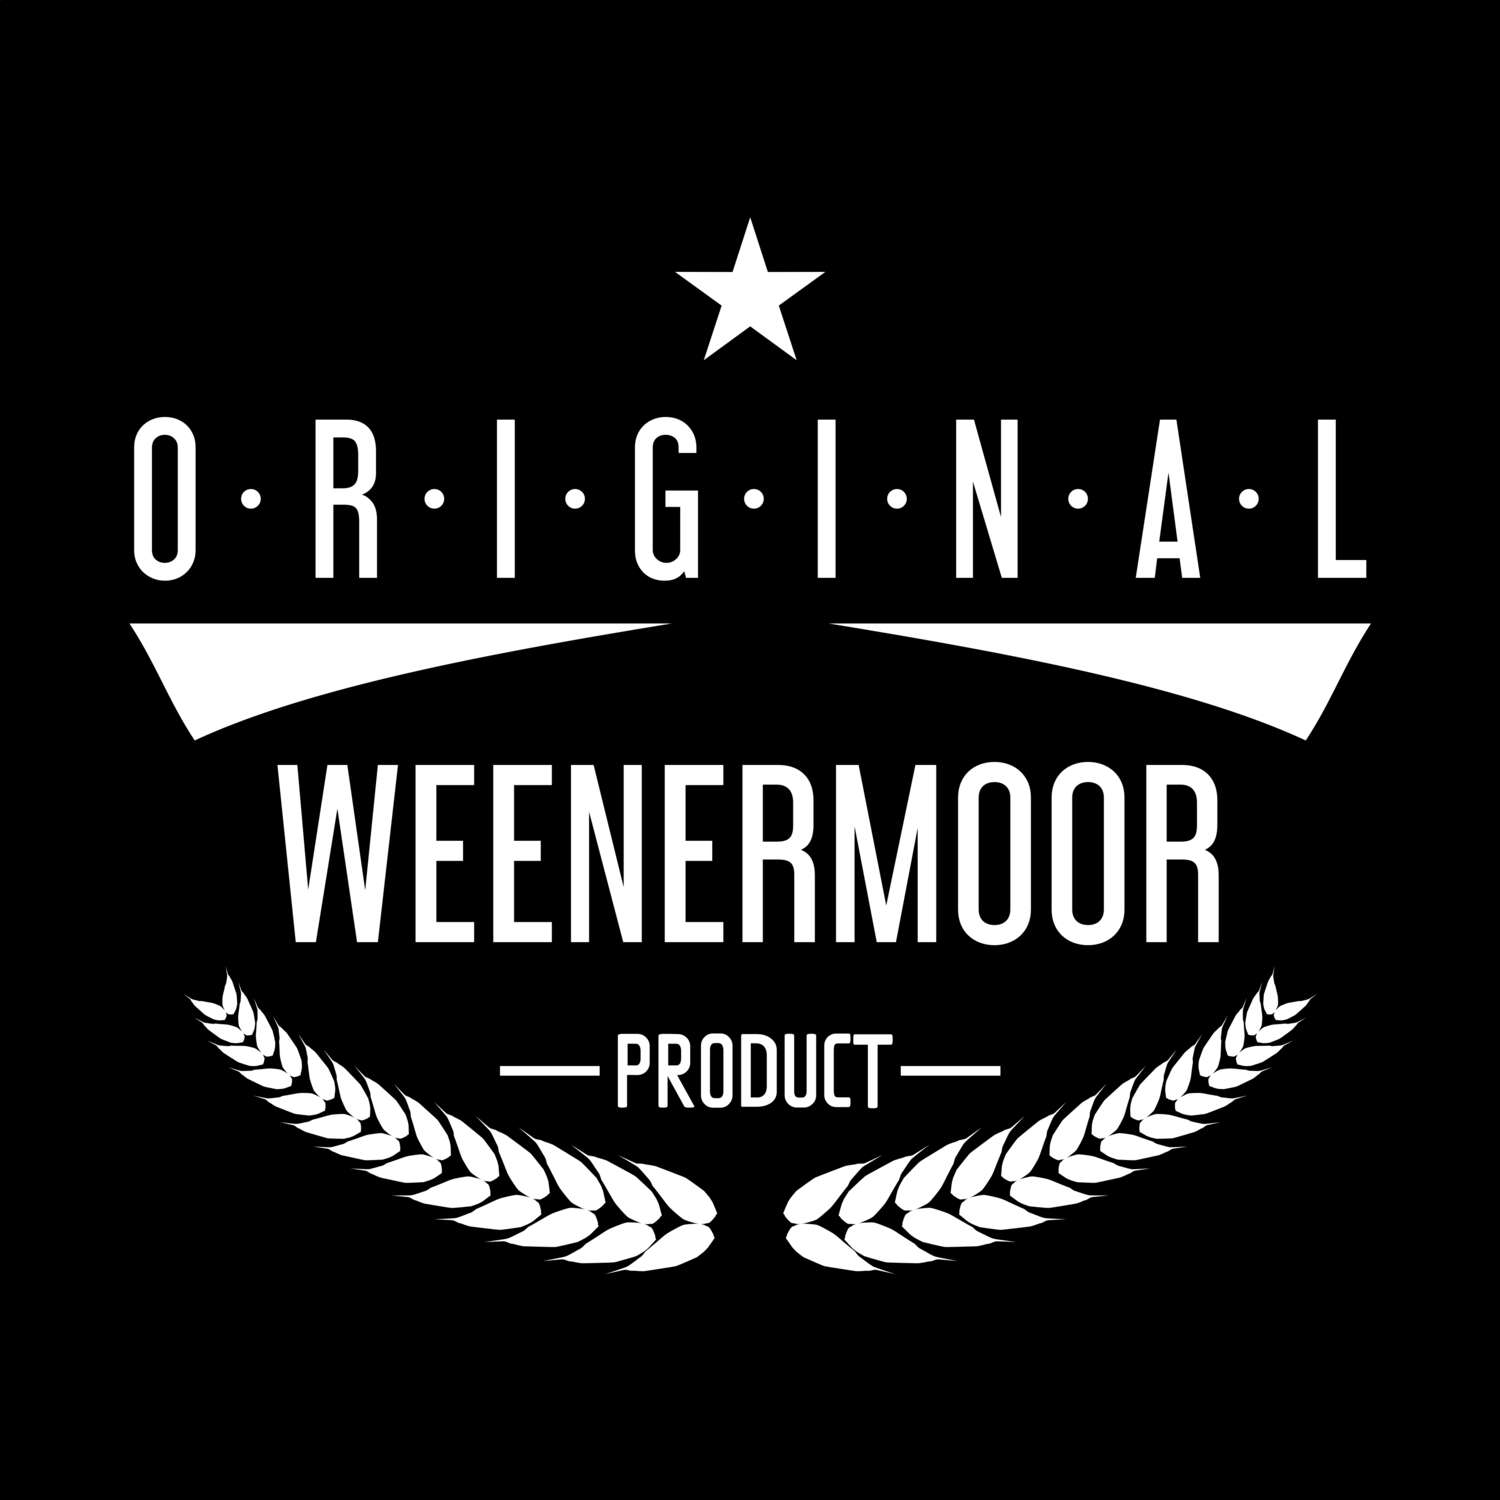 Weenermoor T-Shirt »Original Product«